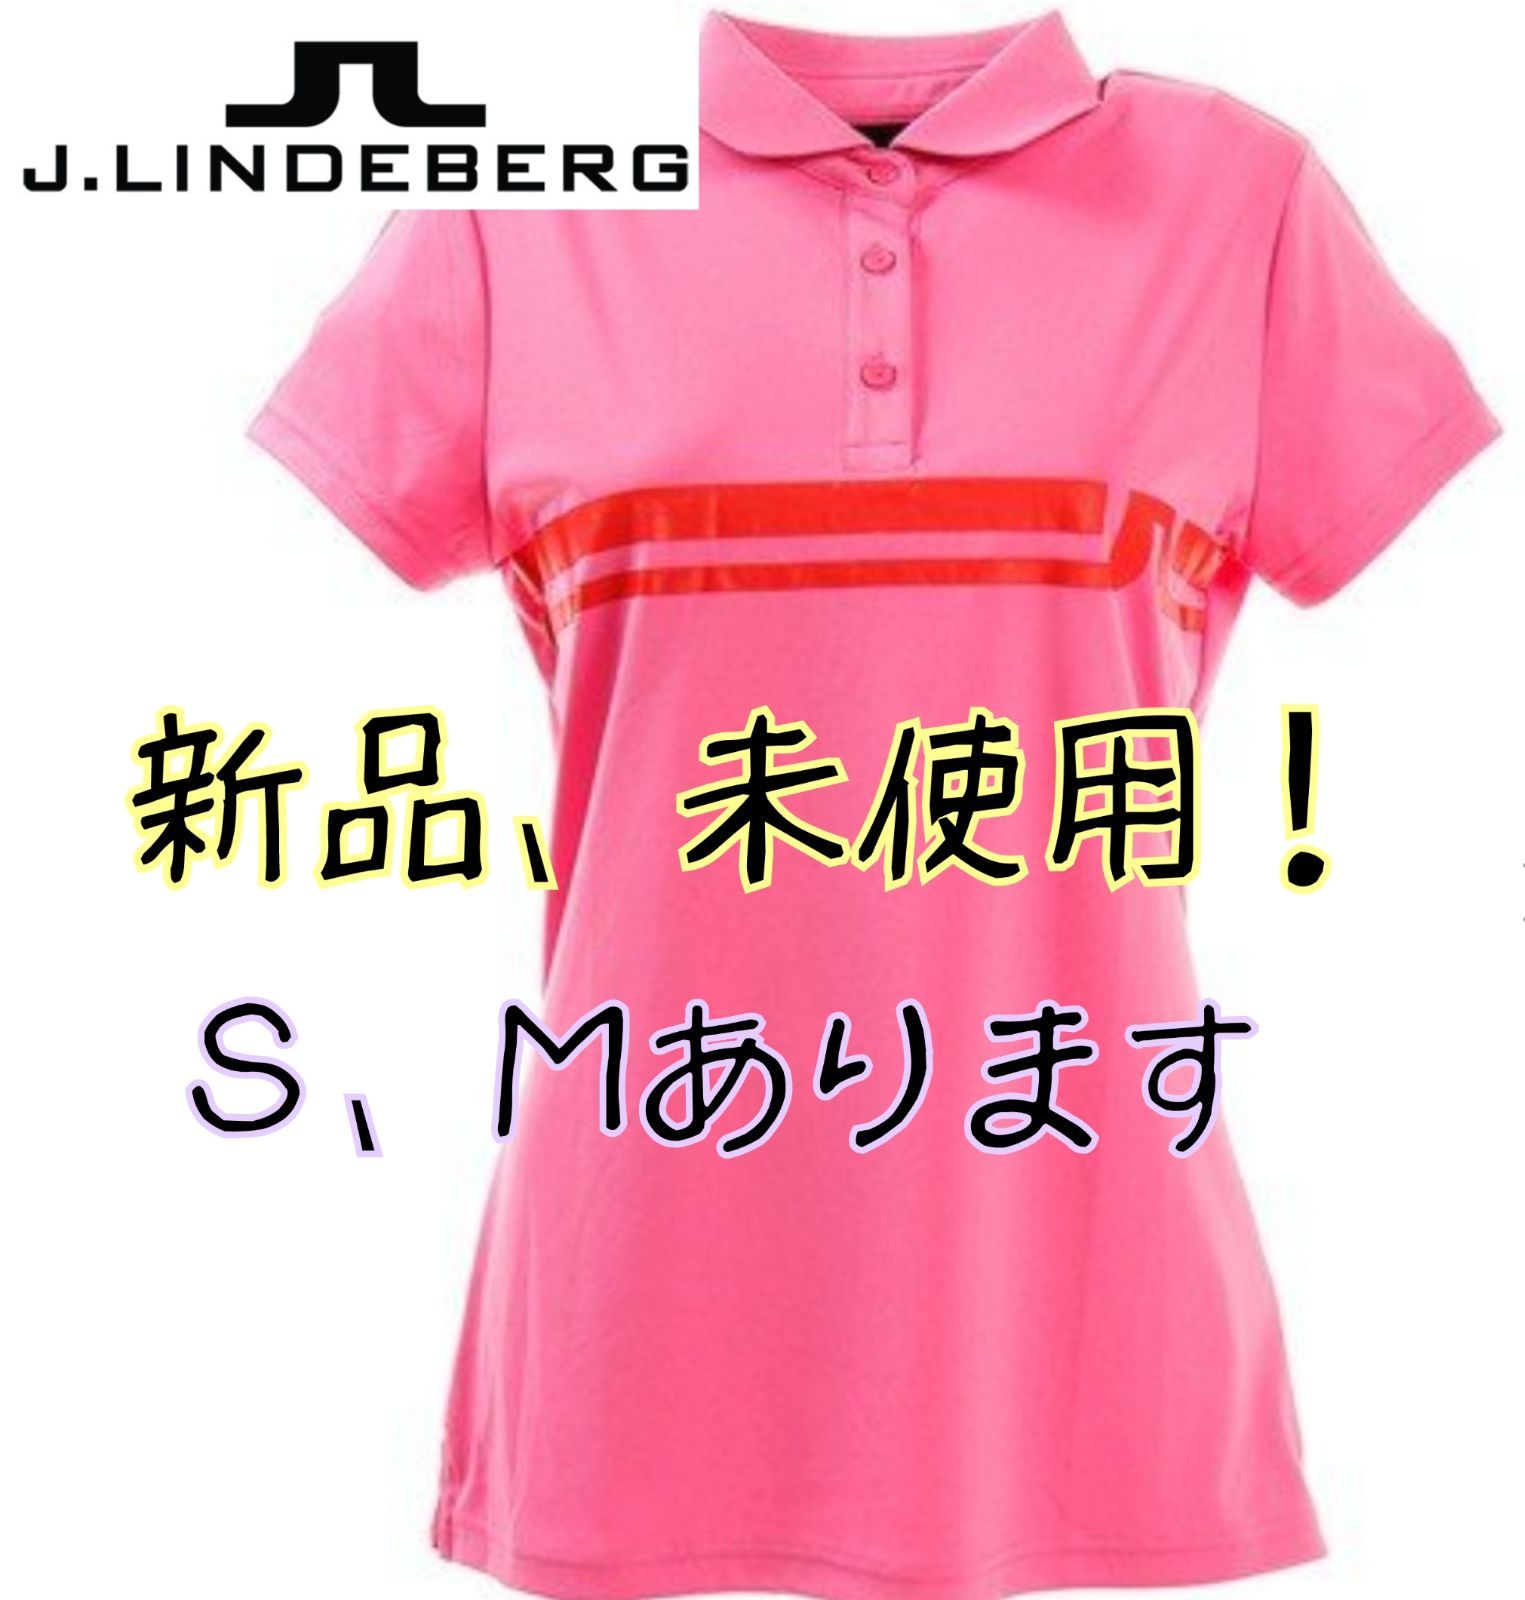 セール価格【J.LINDEBERG】ゴルフウェア レディース 半袖ポロシャツ